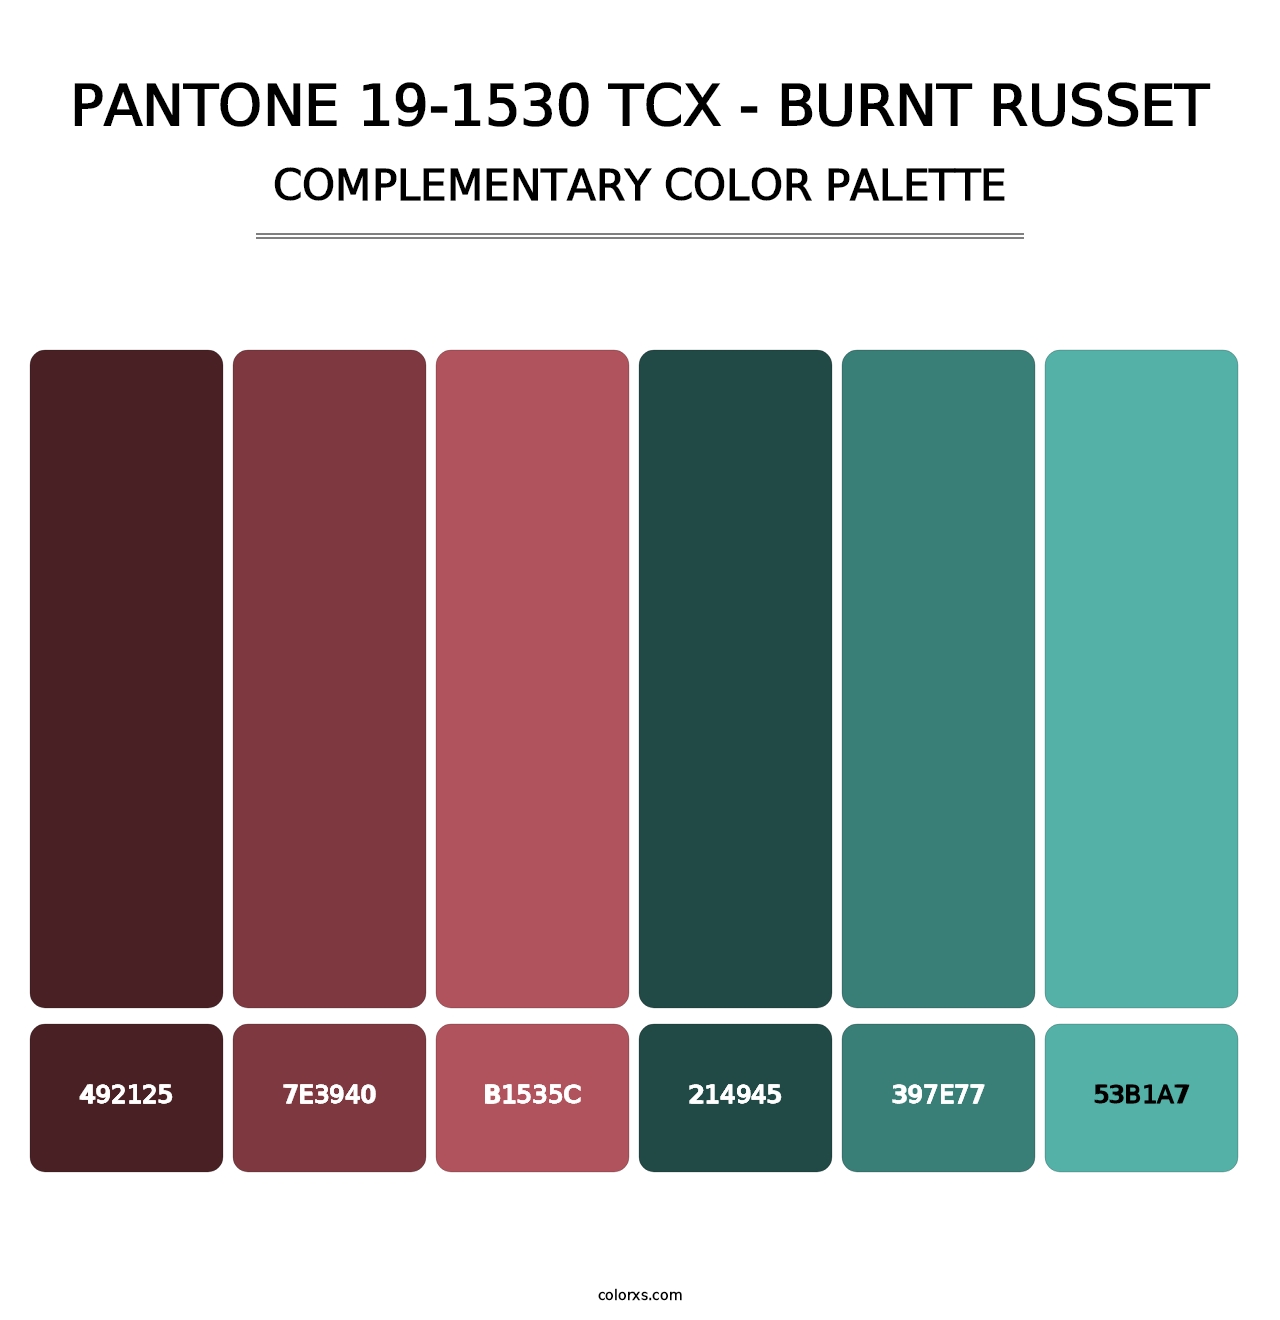 PANTONE 19-1530 TCX - Burnt Russet - Complementary Color Palette